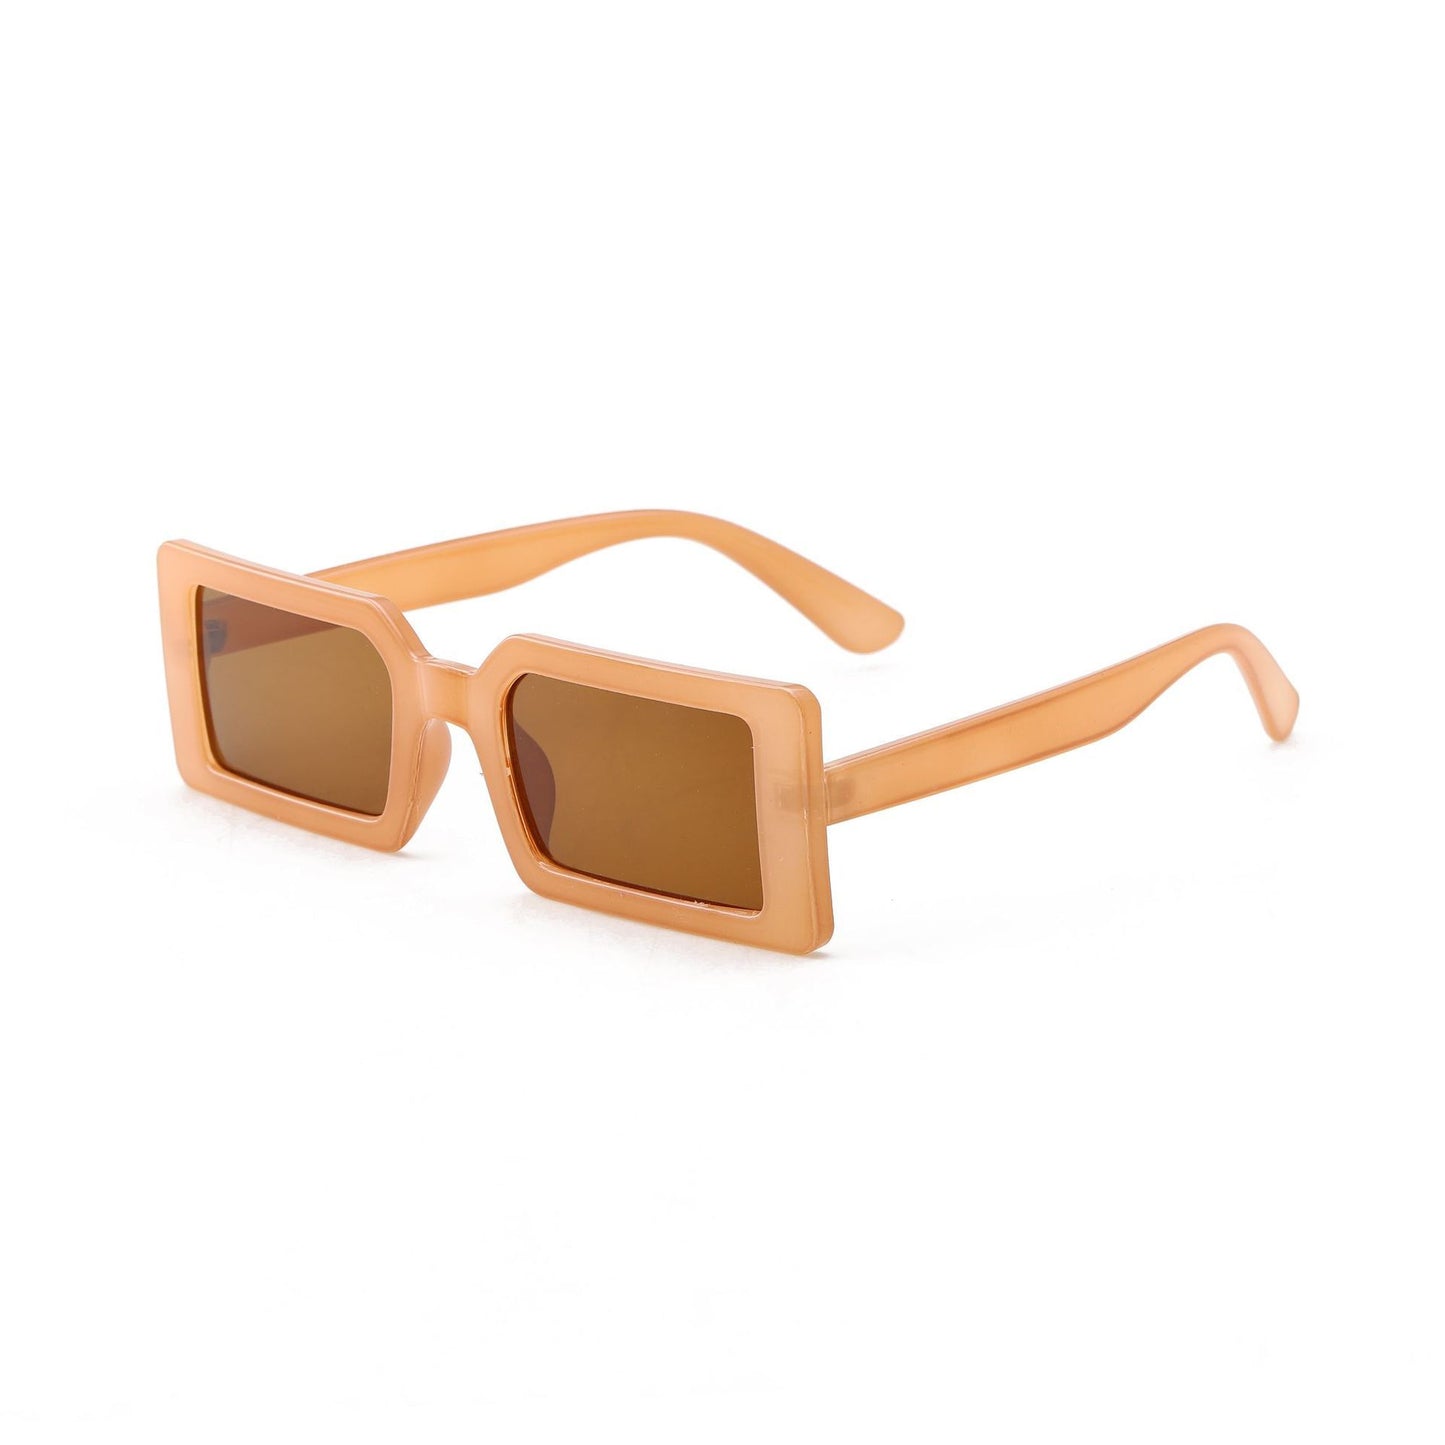 Small Frame Sunglasses, Square Sunglasses, Cross-border Trend, Square Sunglasses Women